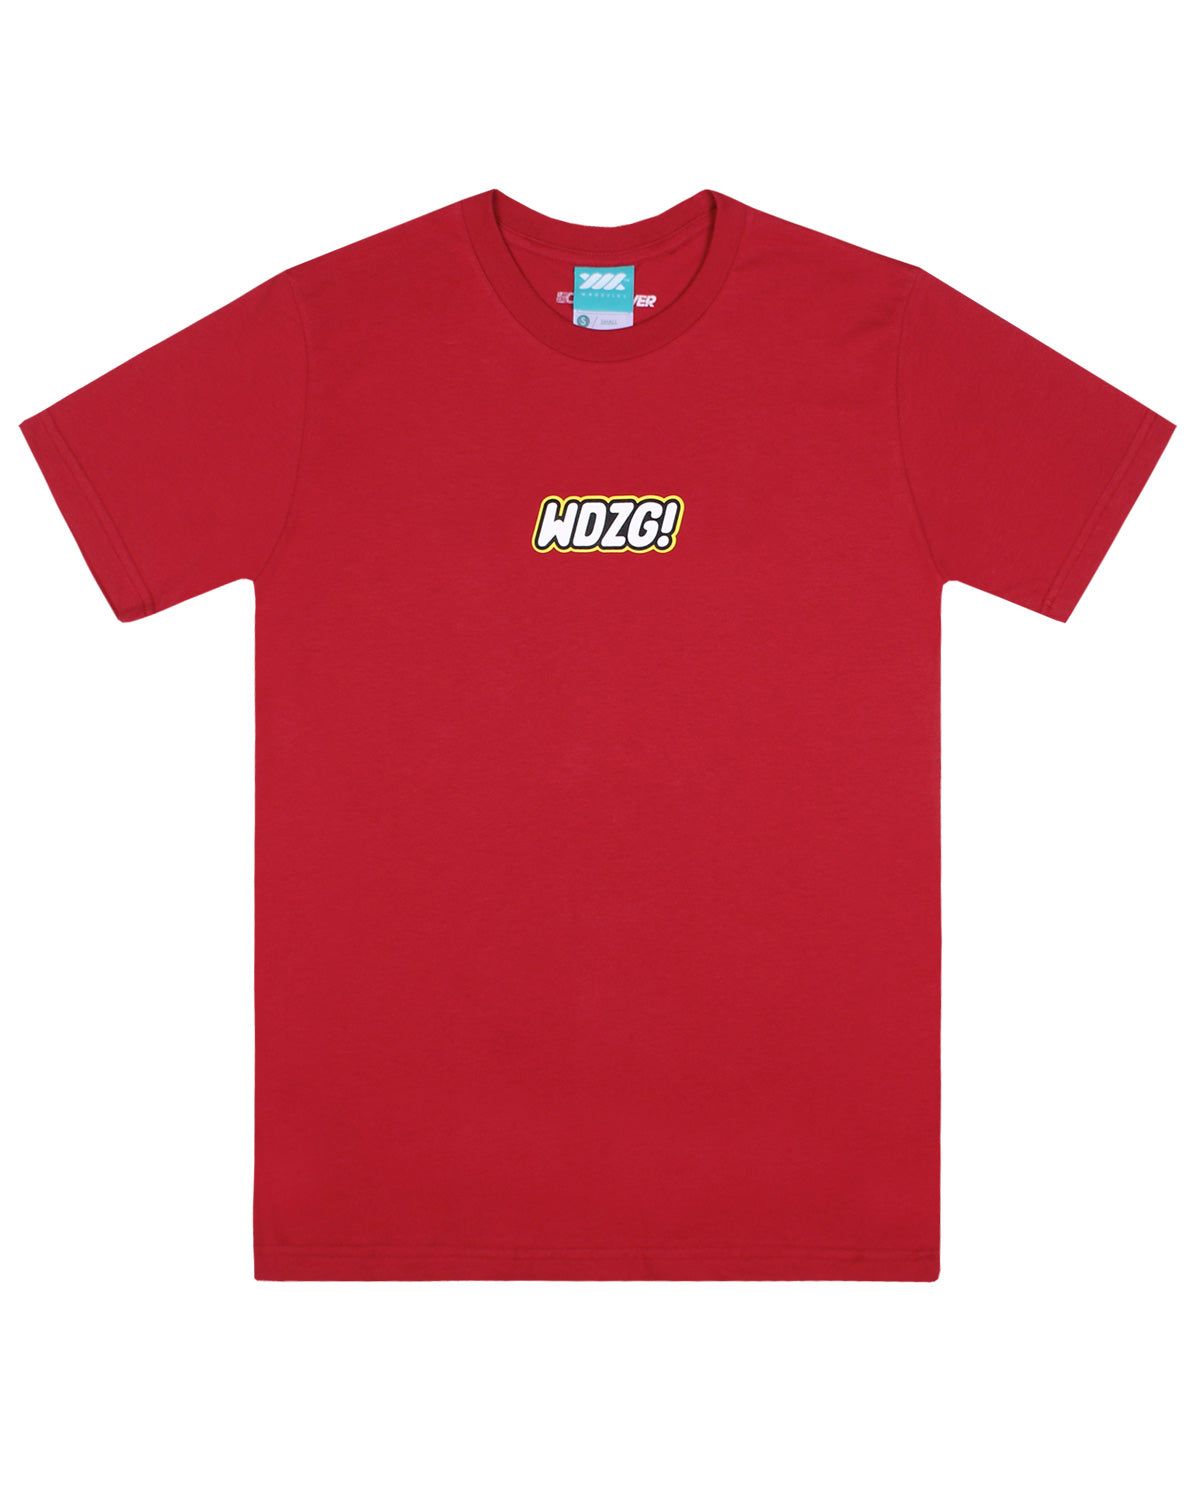 Wadezig! T-Shirt - Interlock Tee Red